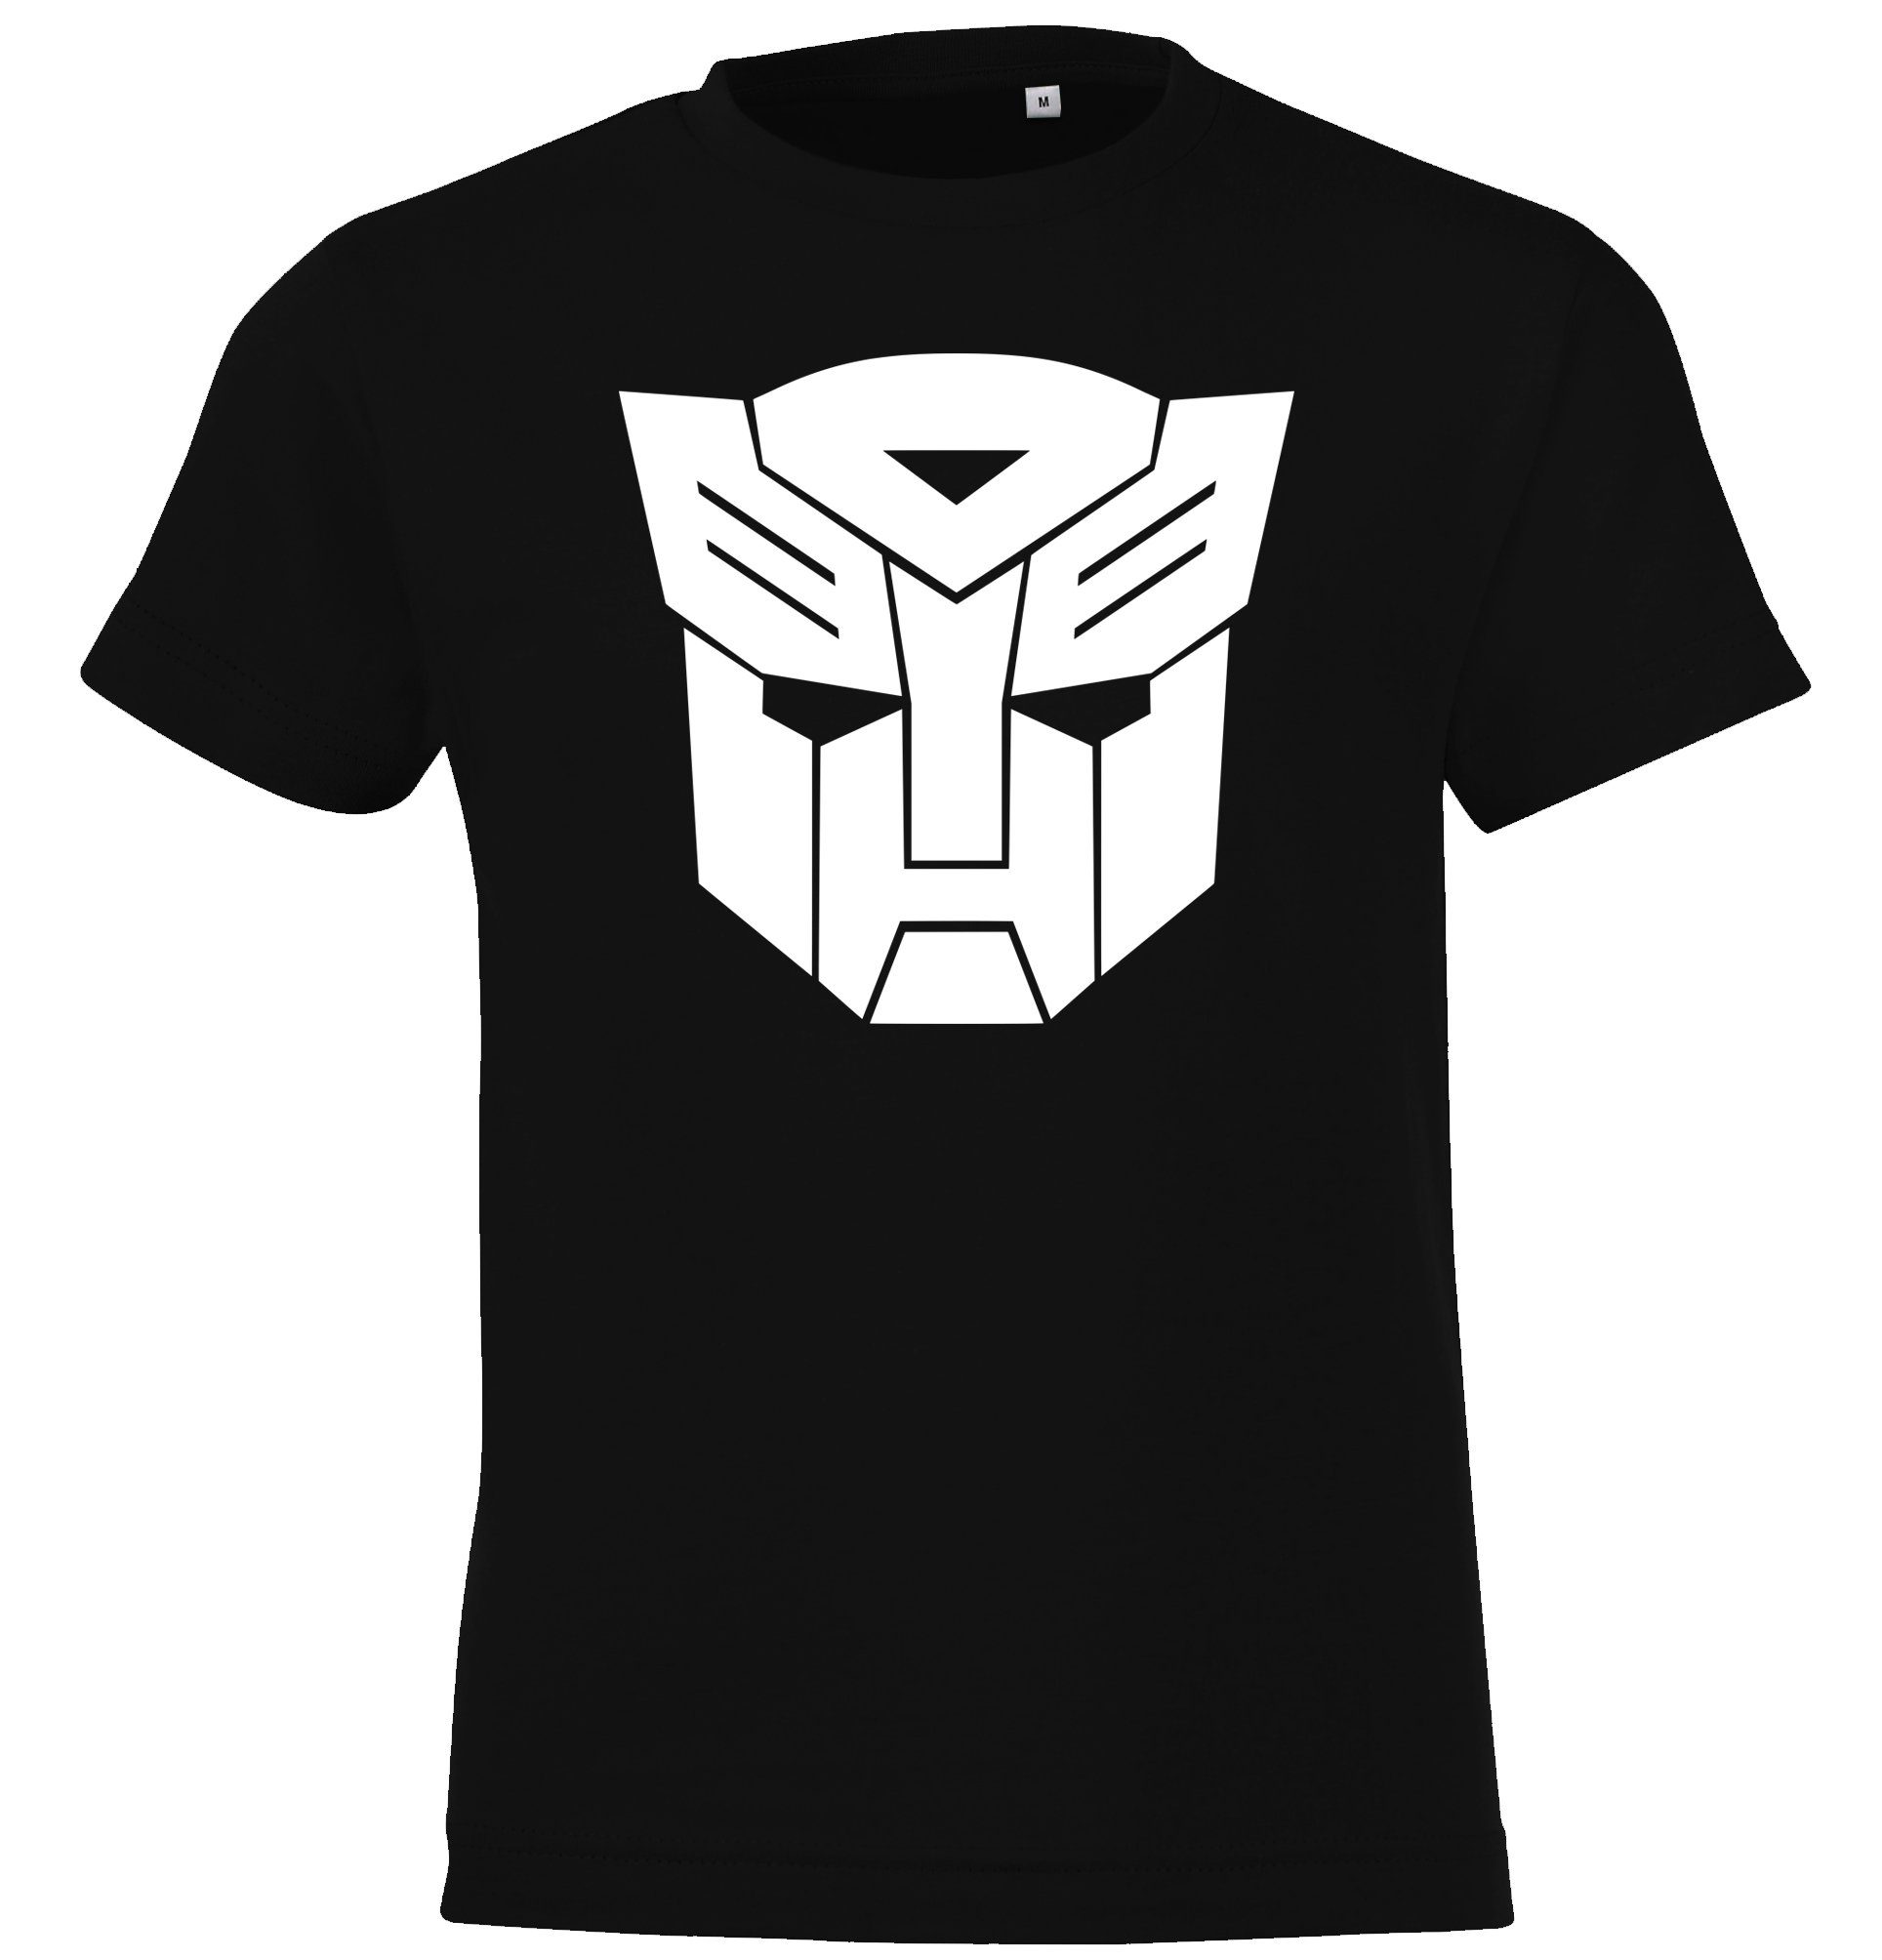 Youth Designz Schwarz mit trendigem T-shirt Autobot T-Shirt Kinder Frontprint